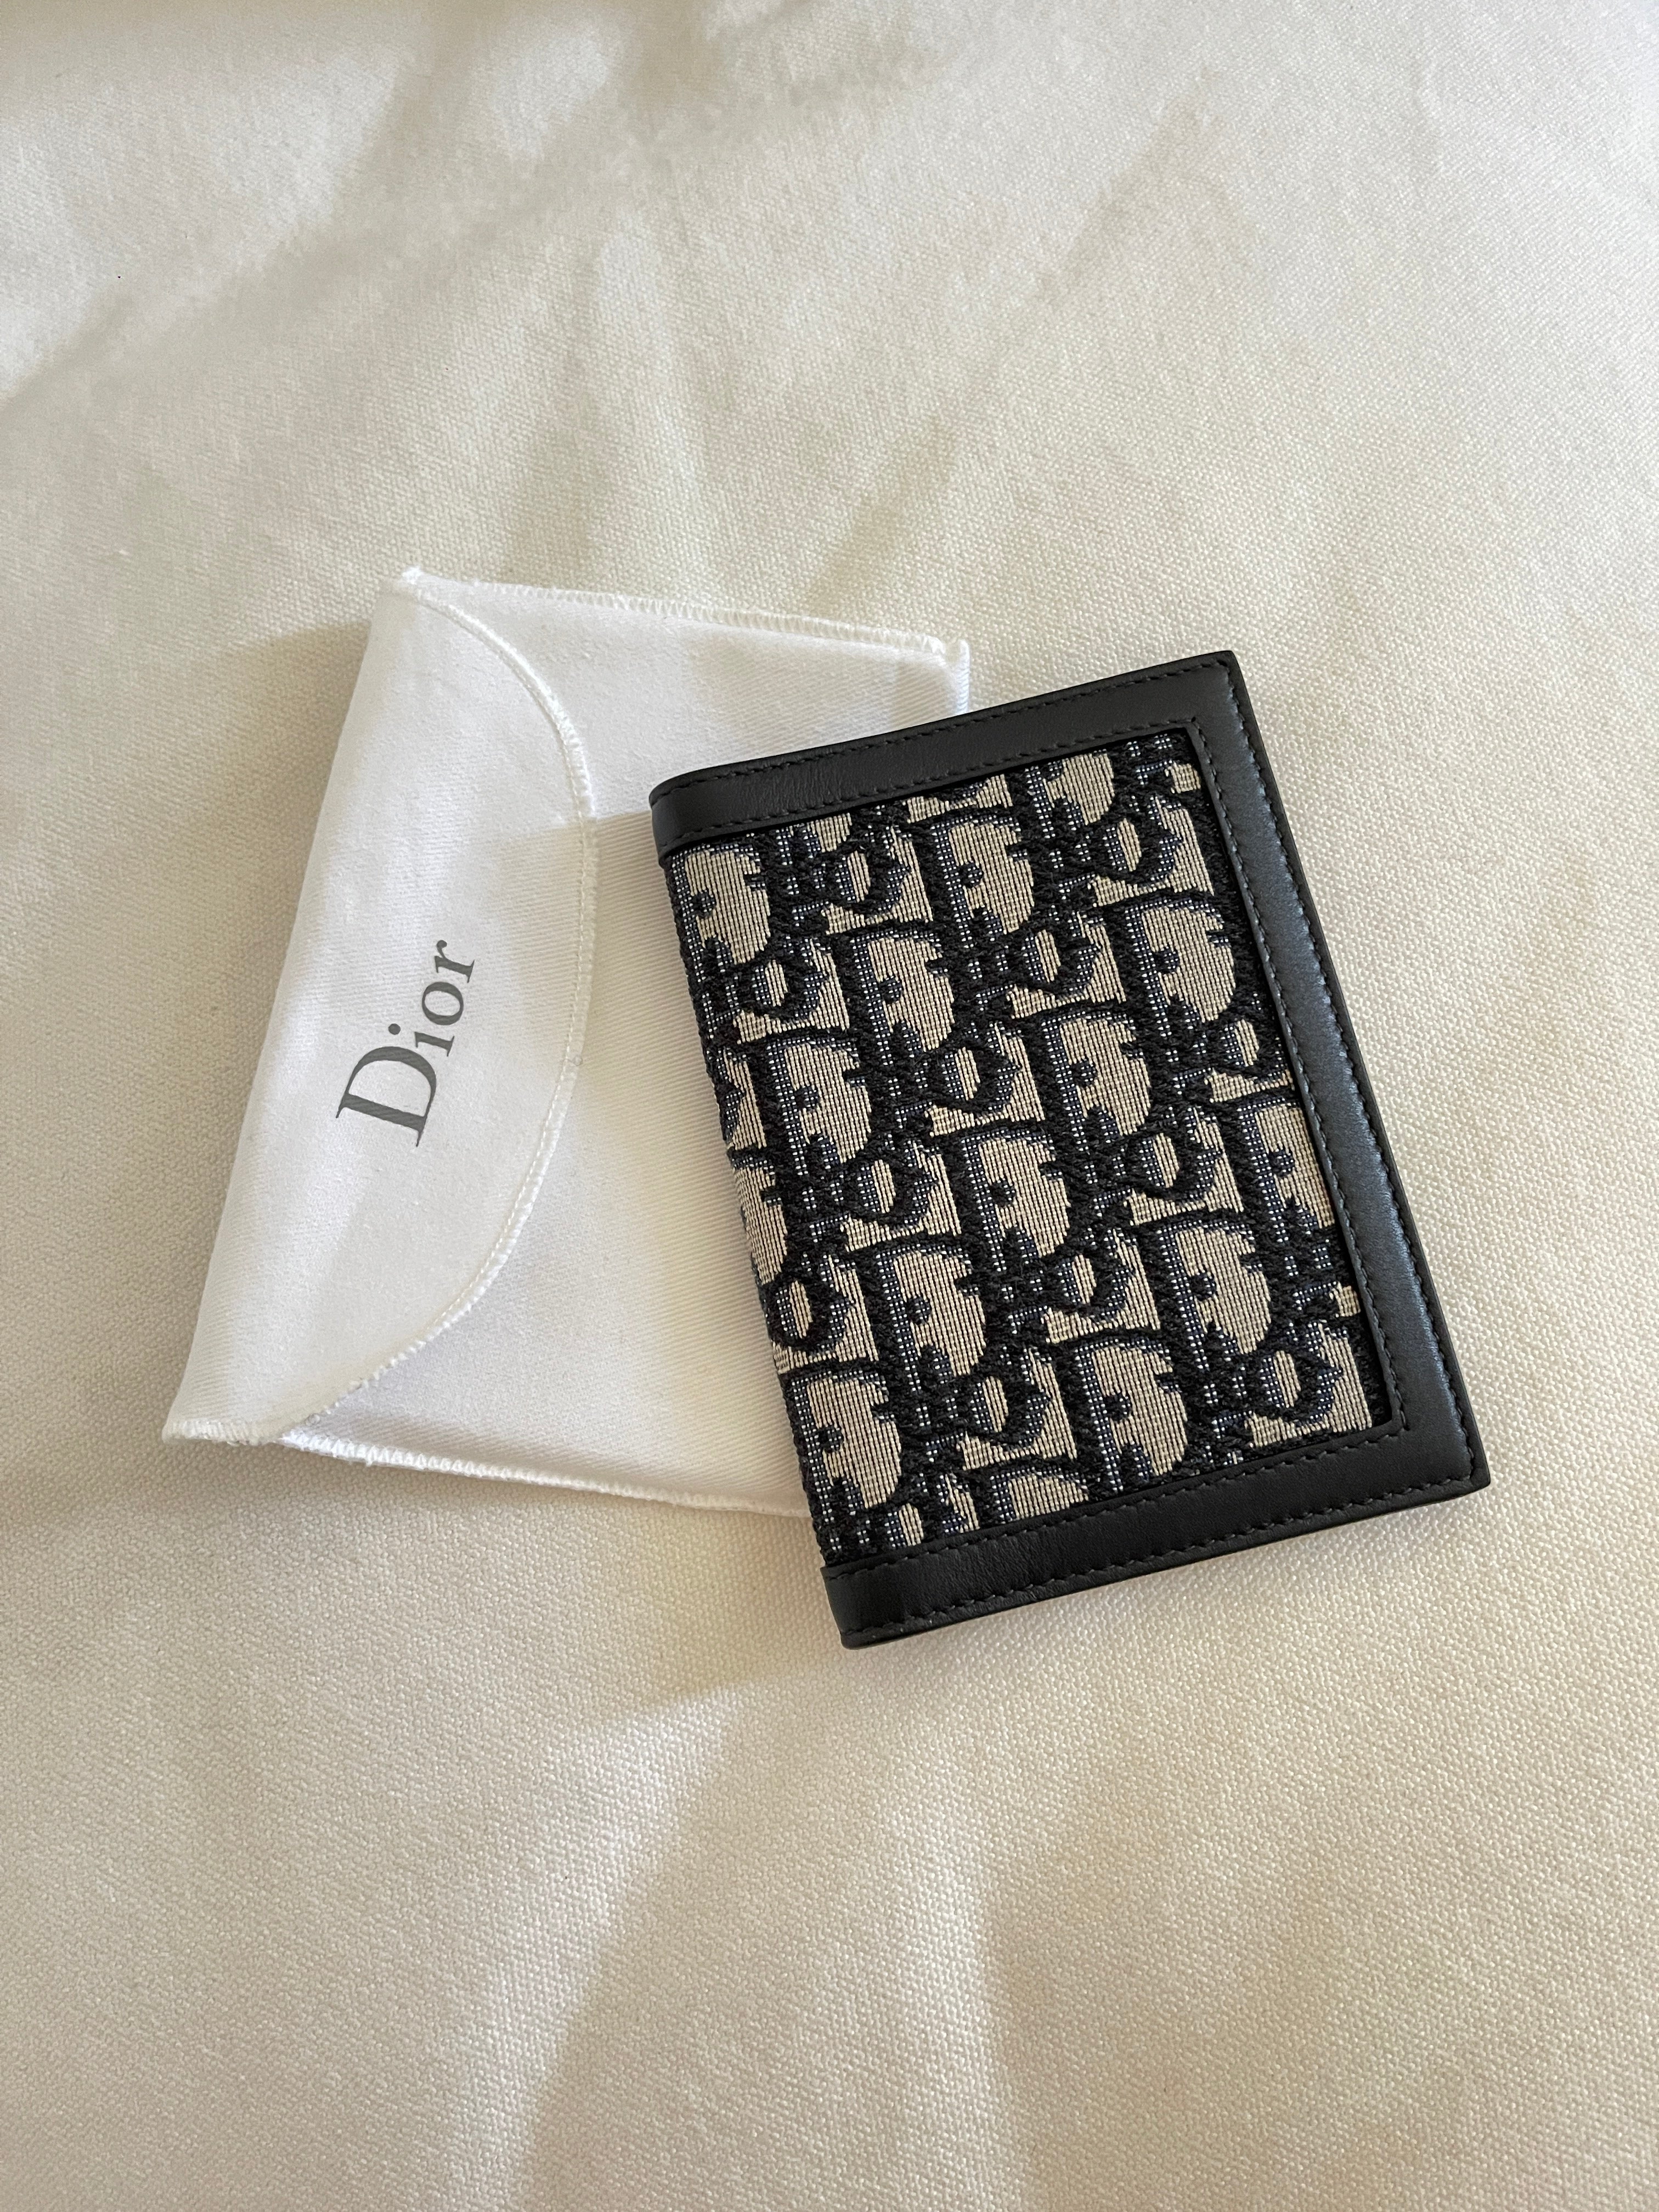 Christian Dior - Passport Holder on Designer Wardrobe